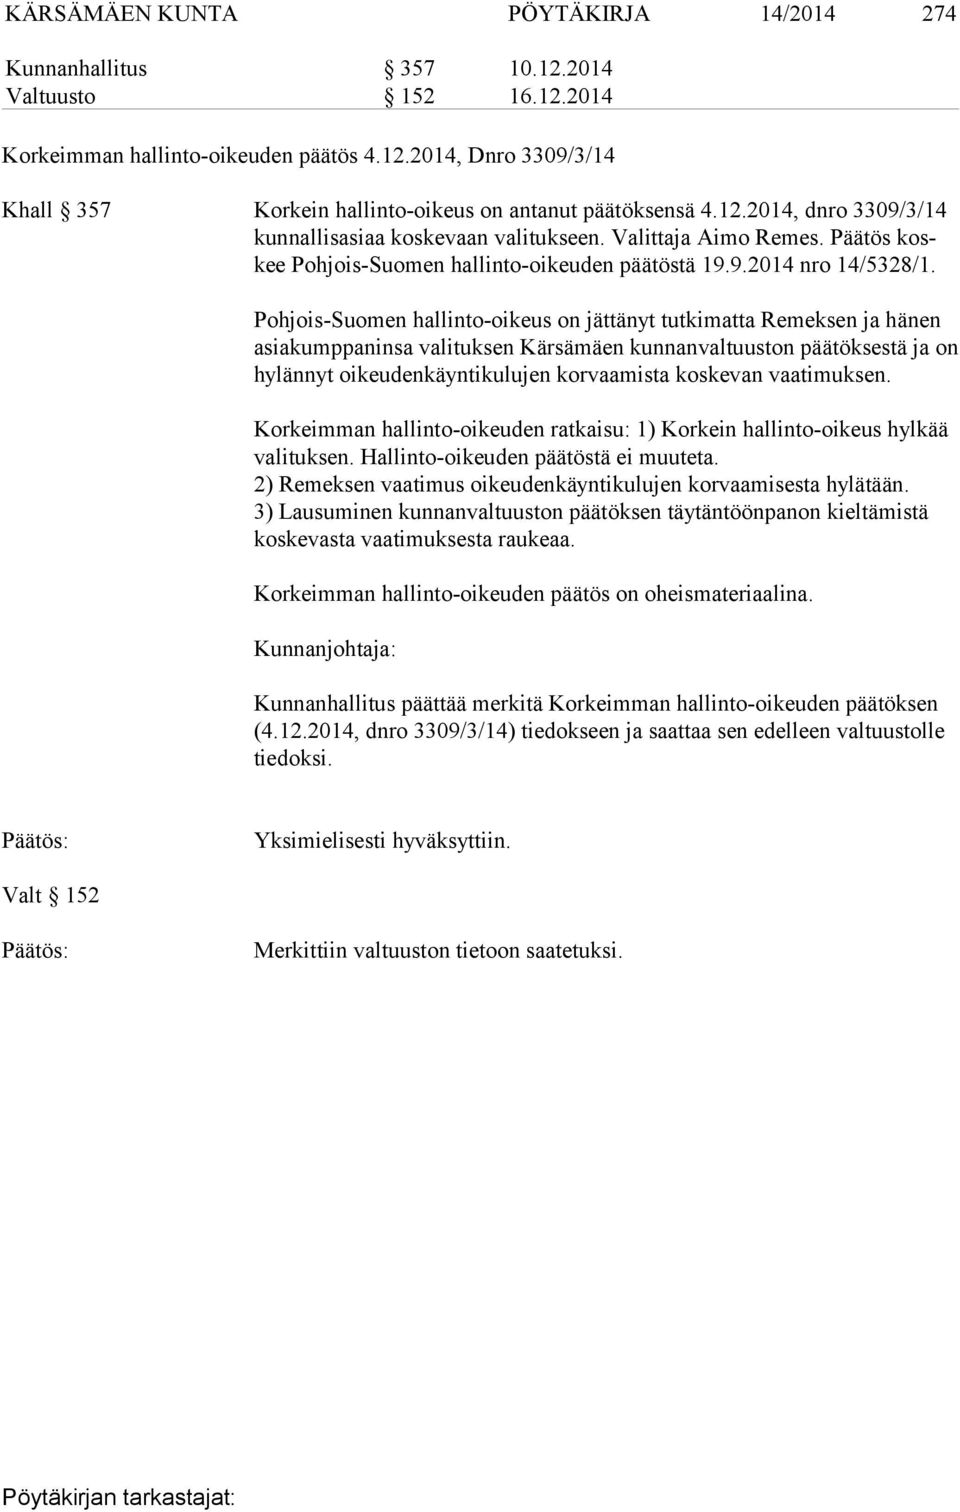 Pohjois-Suomen hallinto-oikeus on jättänyt tutkimatta Remeksen ja hänen asiakumppaninsa valituksen Kär sä mäen kunnanvaltuuston päätöksestä ja on hylännyt oi keu den käyn ti ku lu jen korvaamista